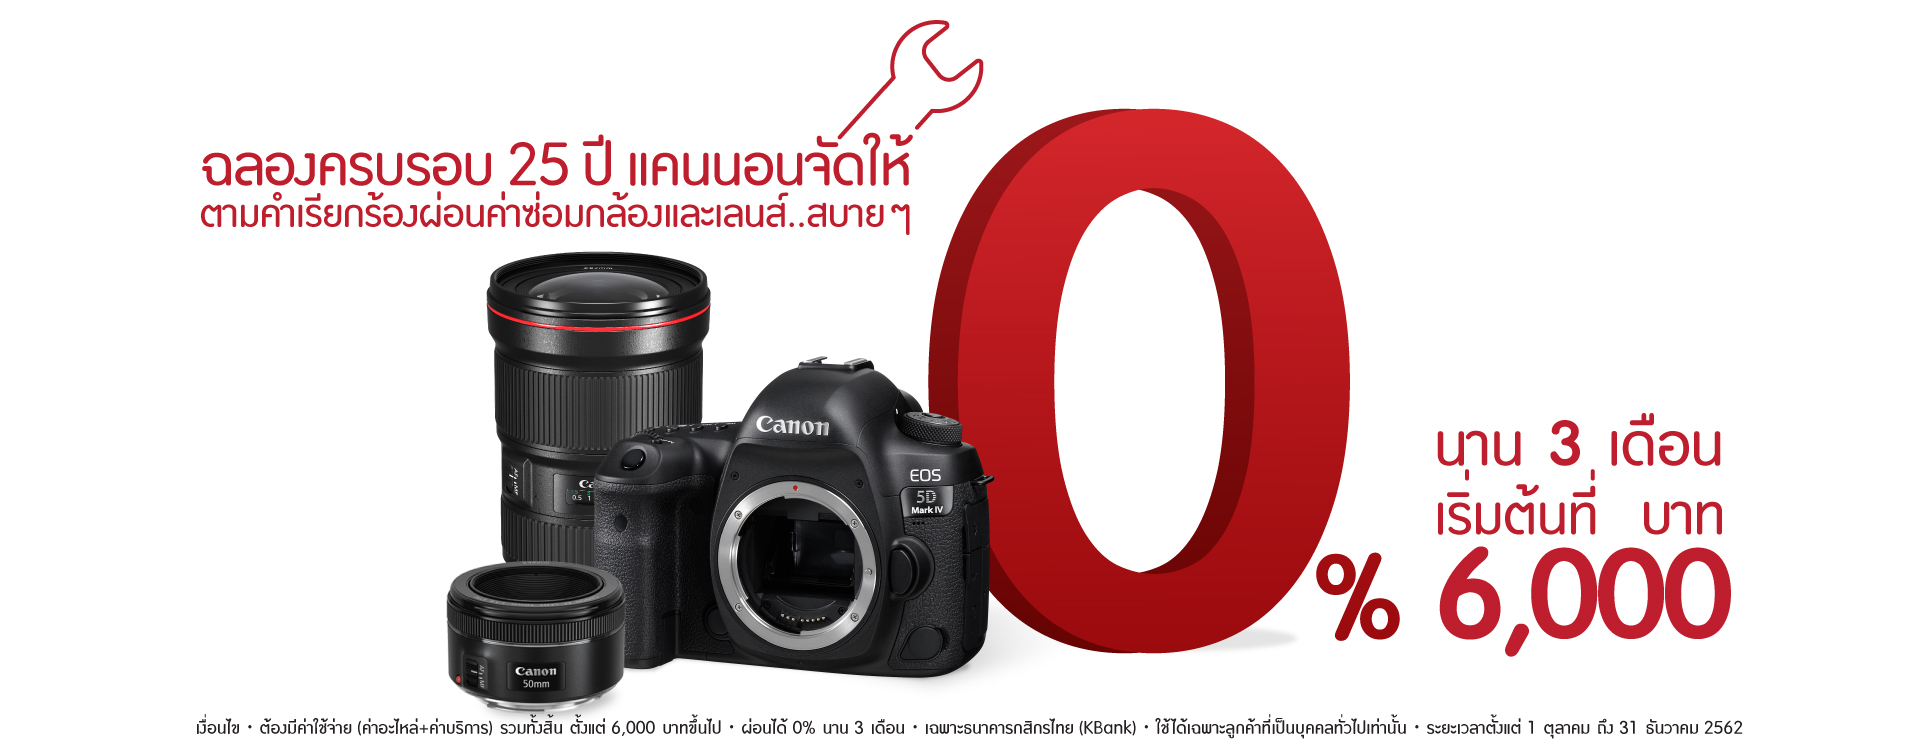 Home Canon Thailand - no flex zone roblox